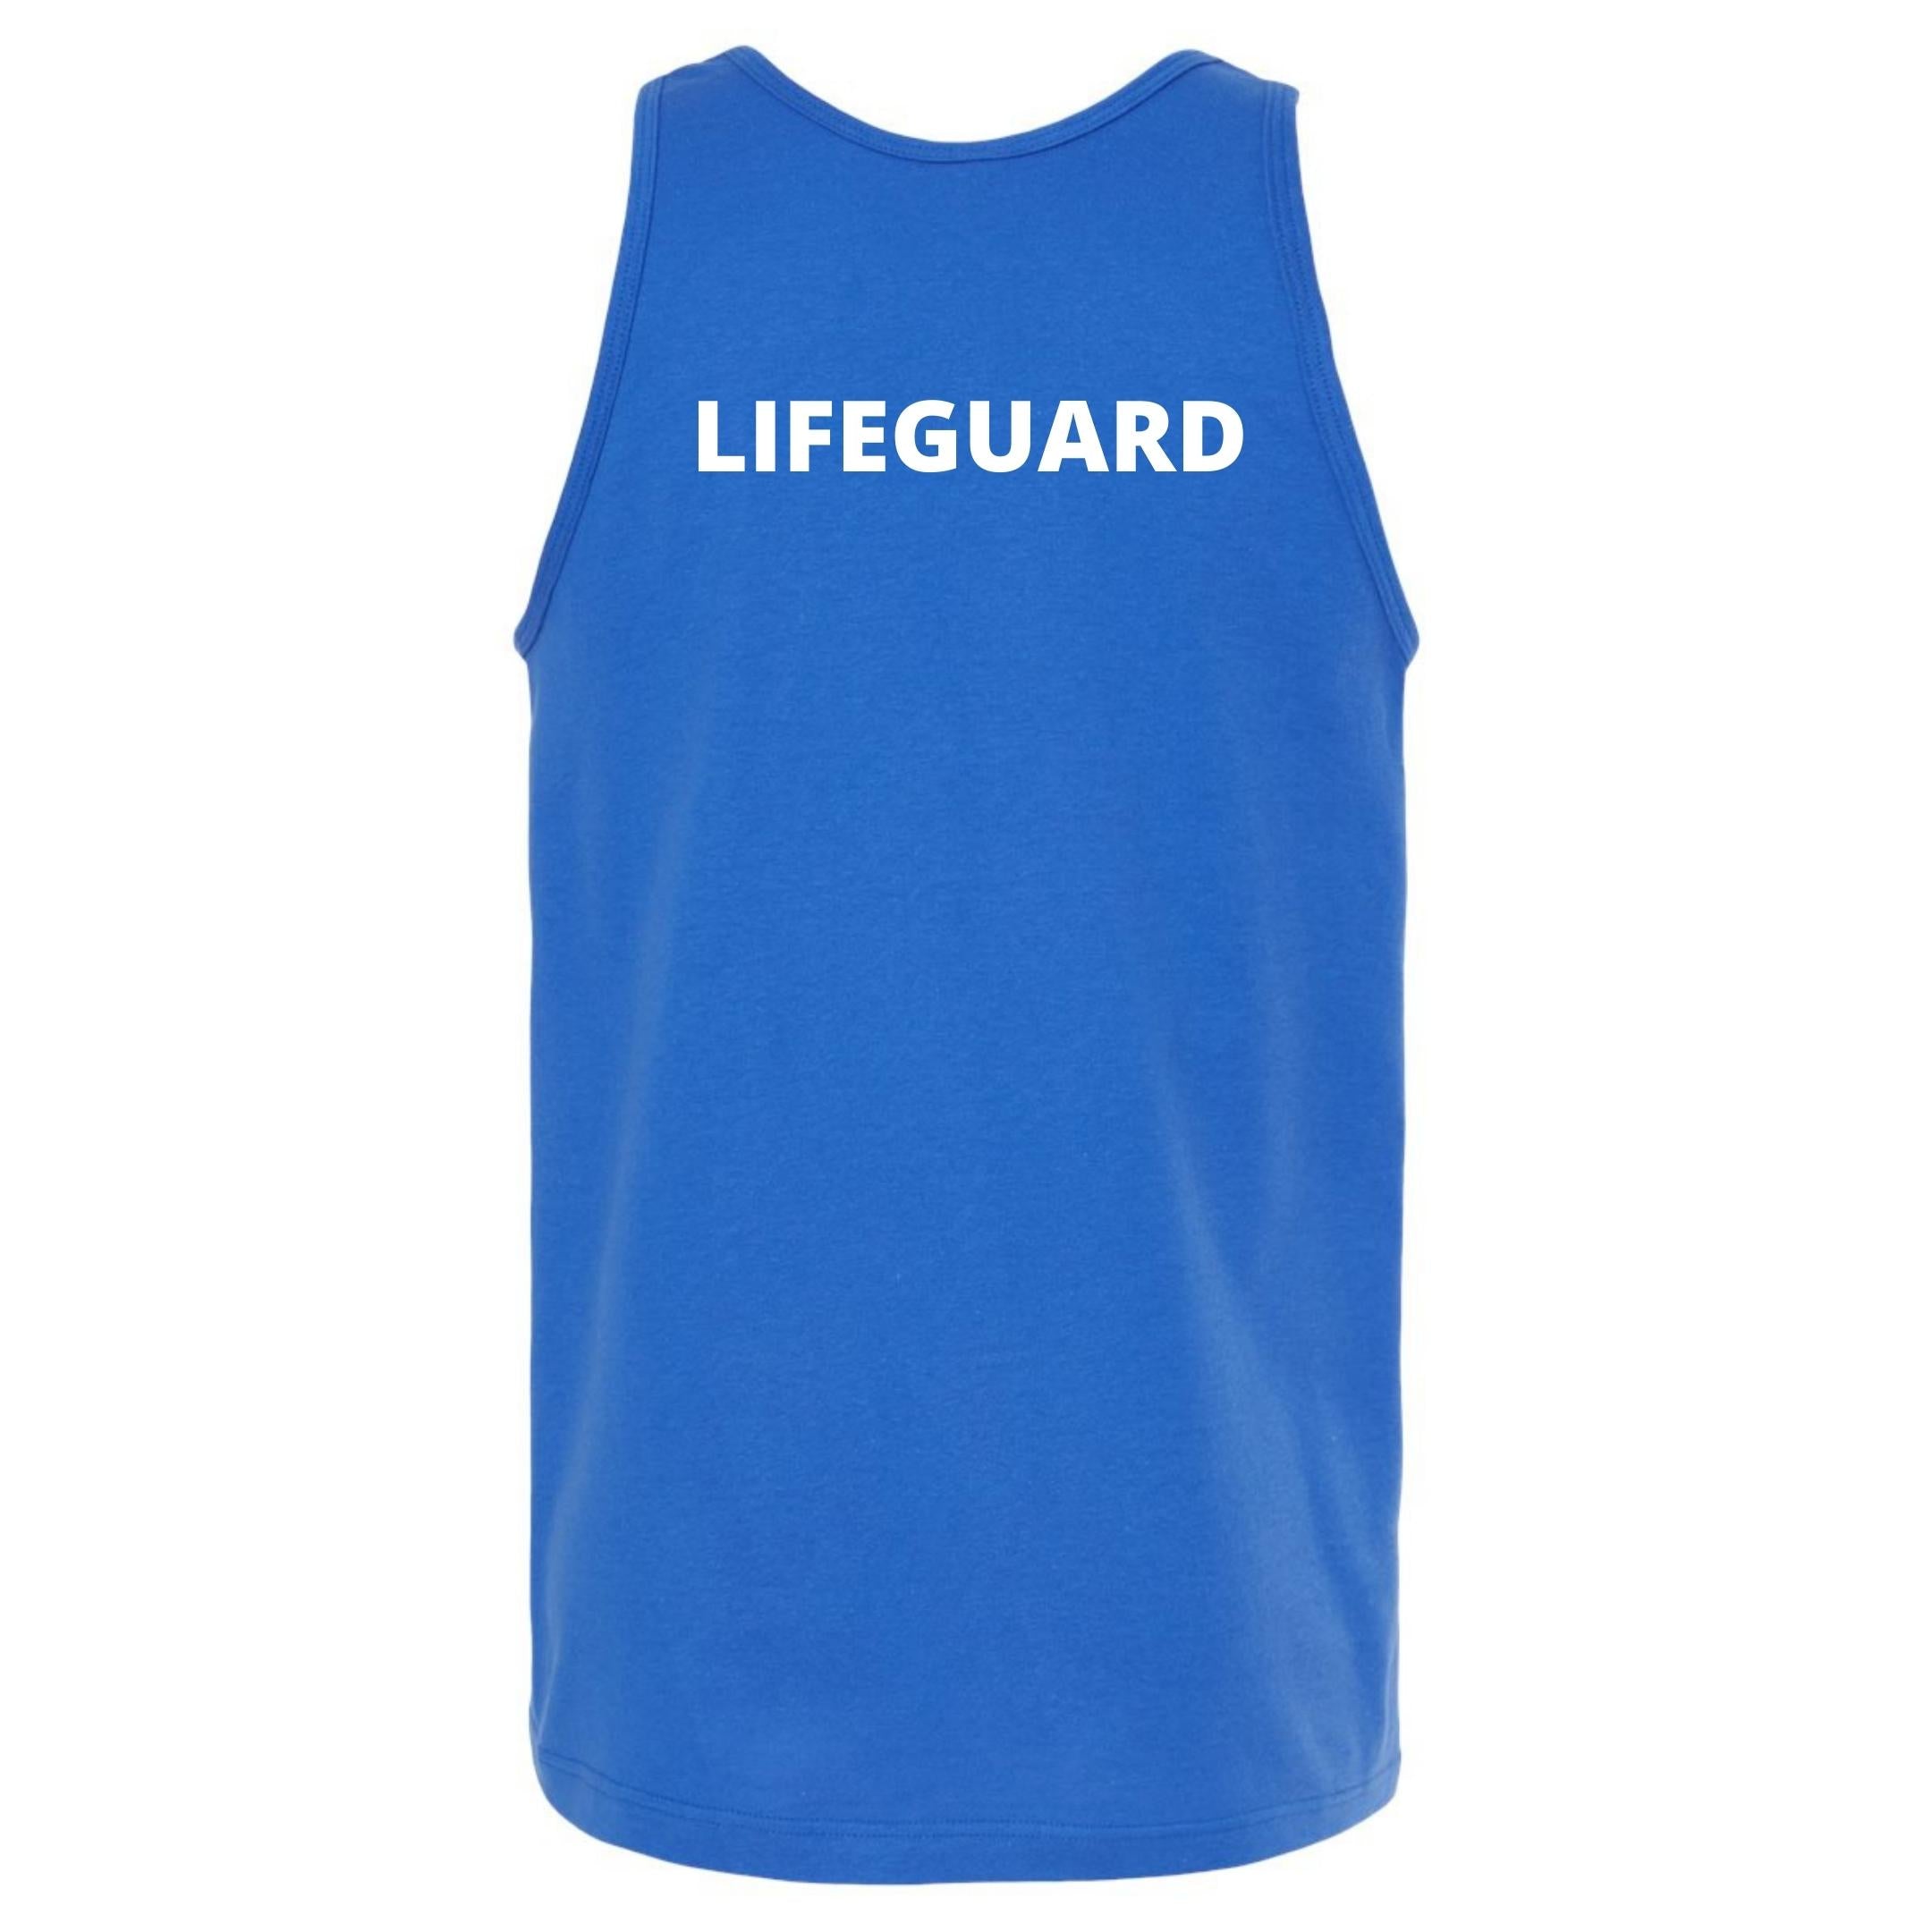 Briarwood Tank- Lifeguard